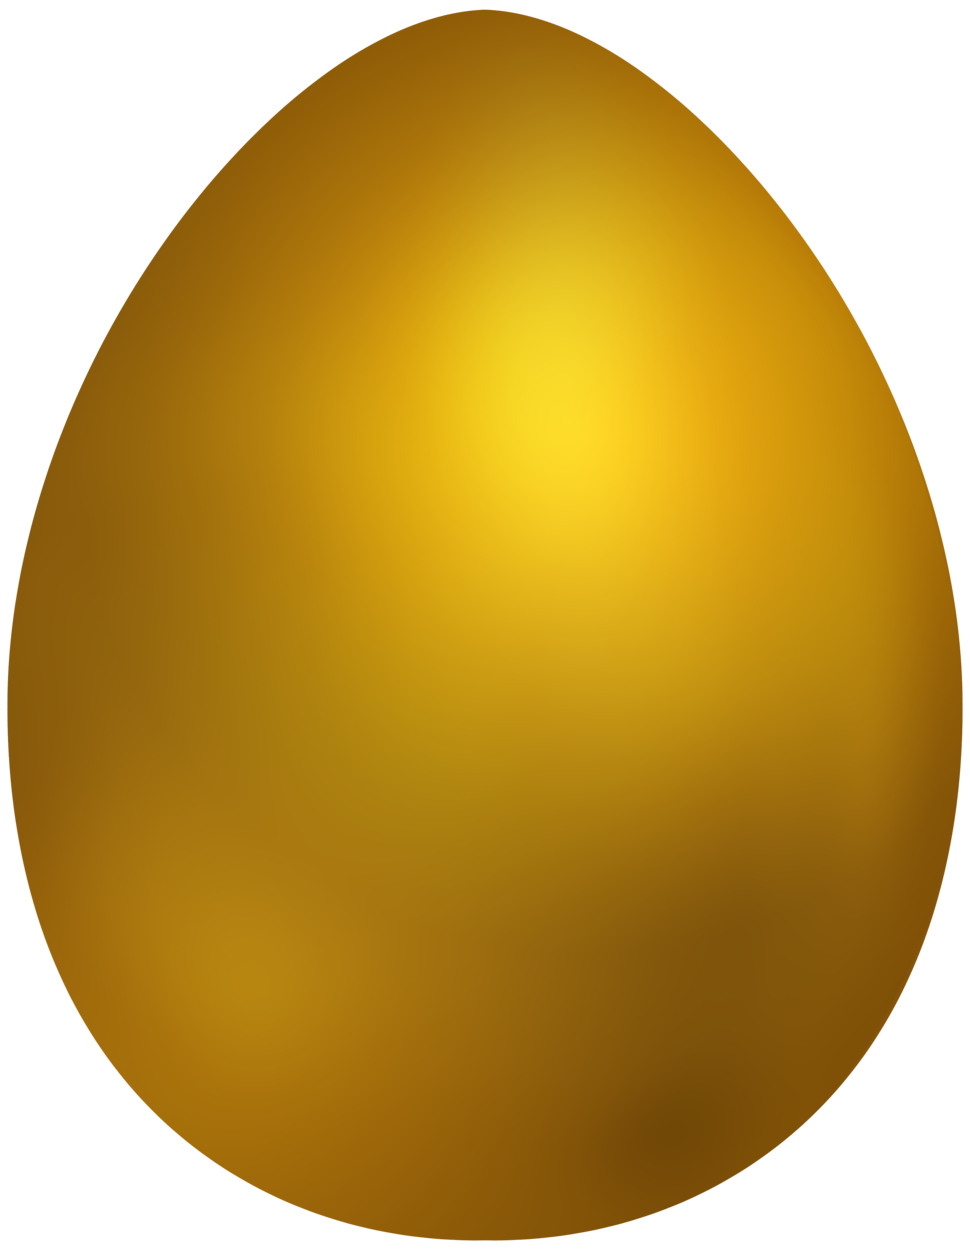 Imagem transparente de ovo de páscoa amarela simples